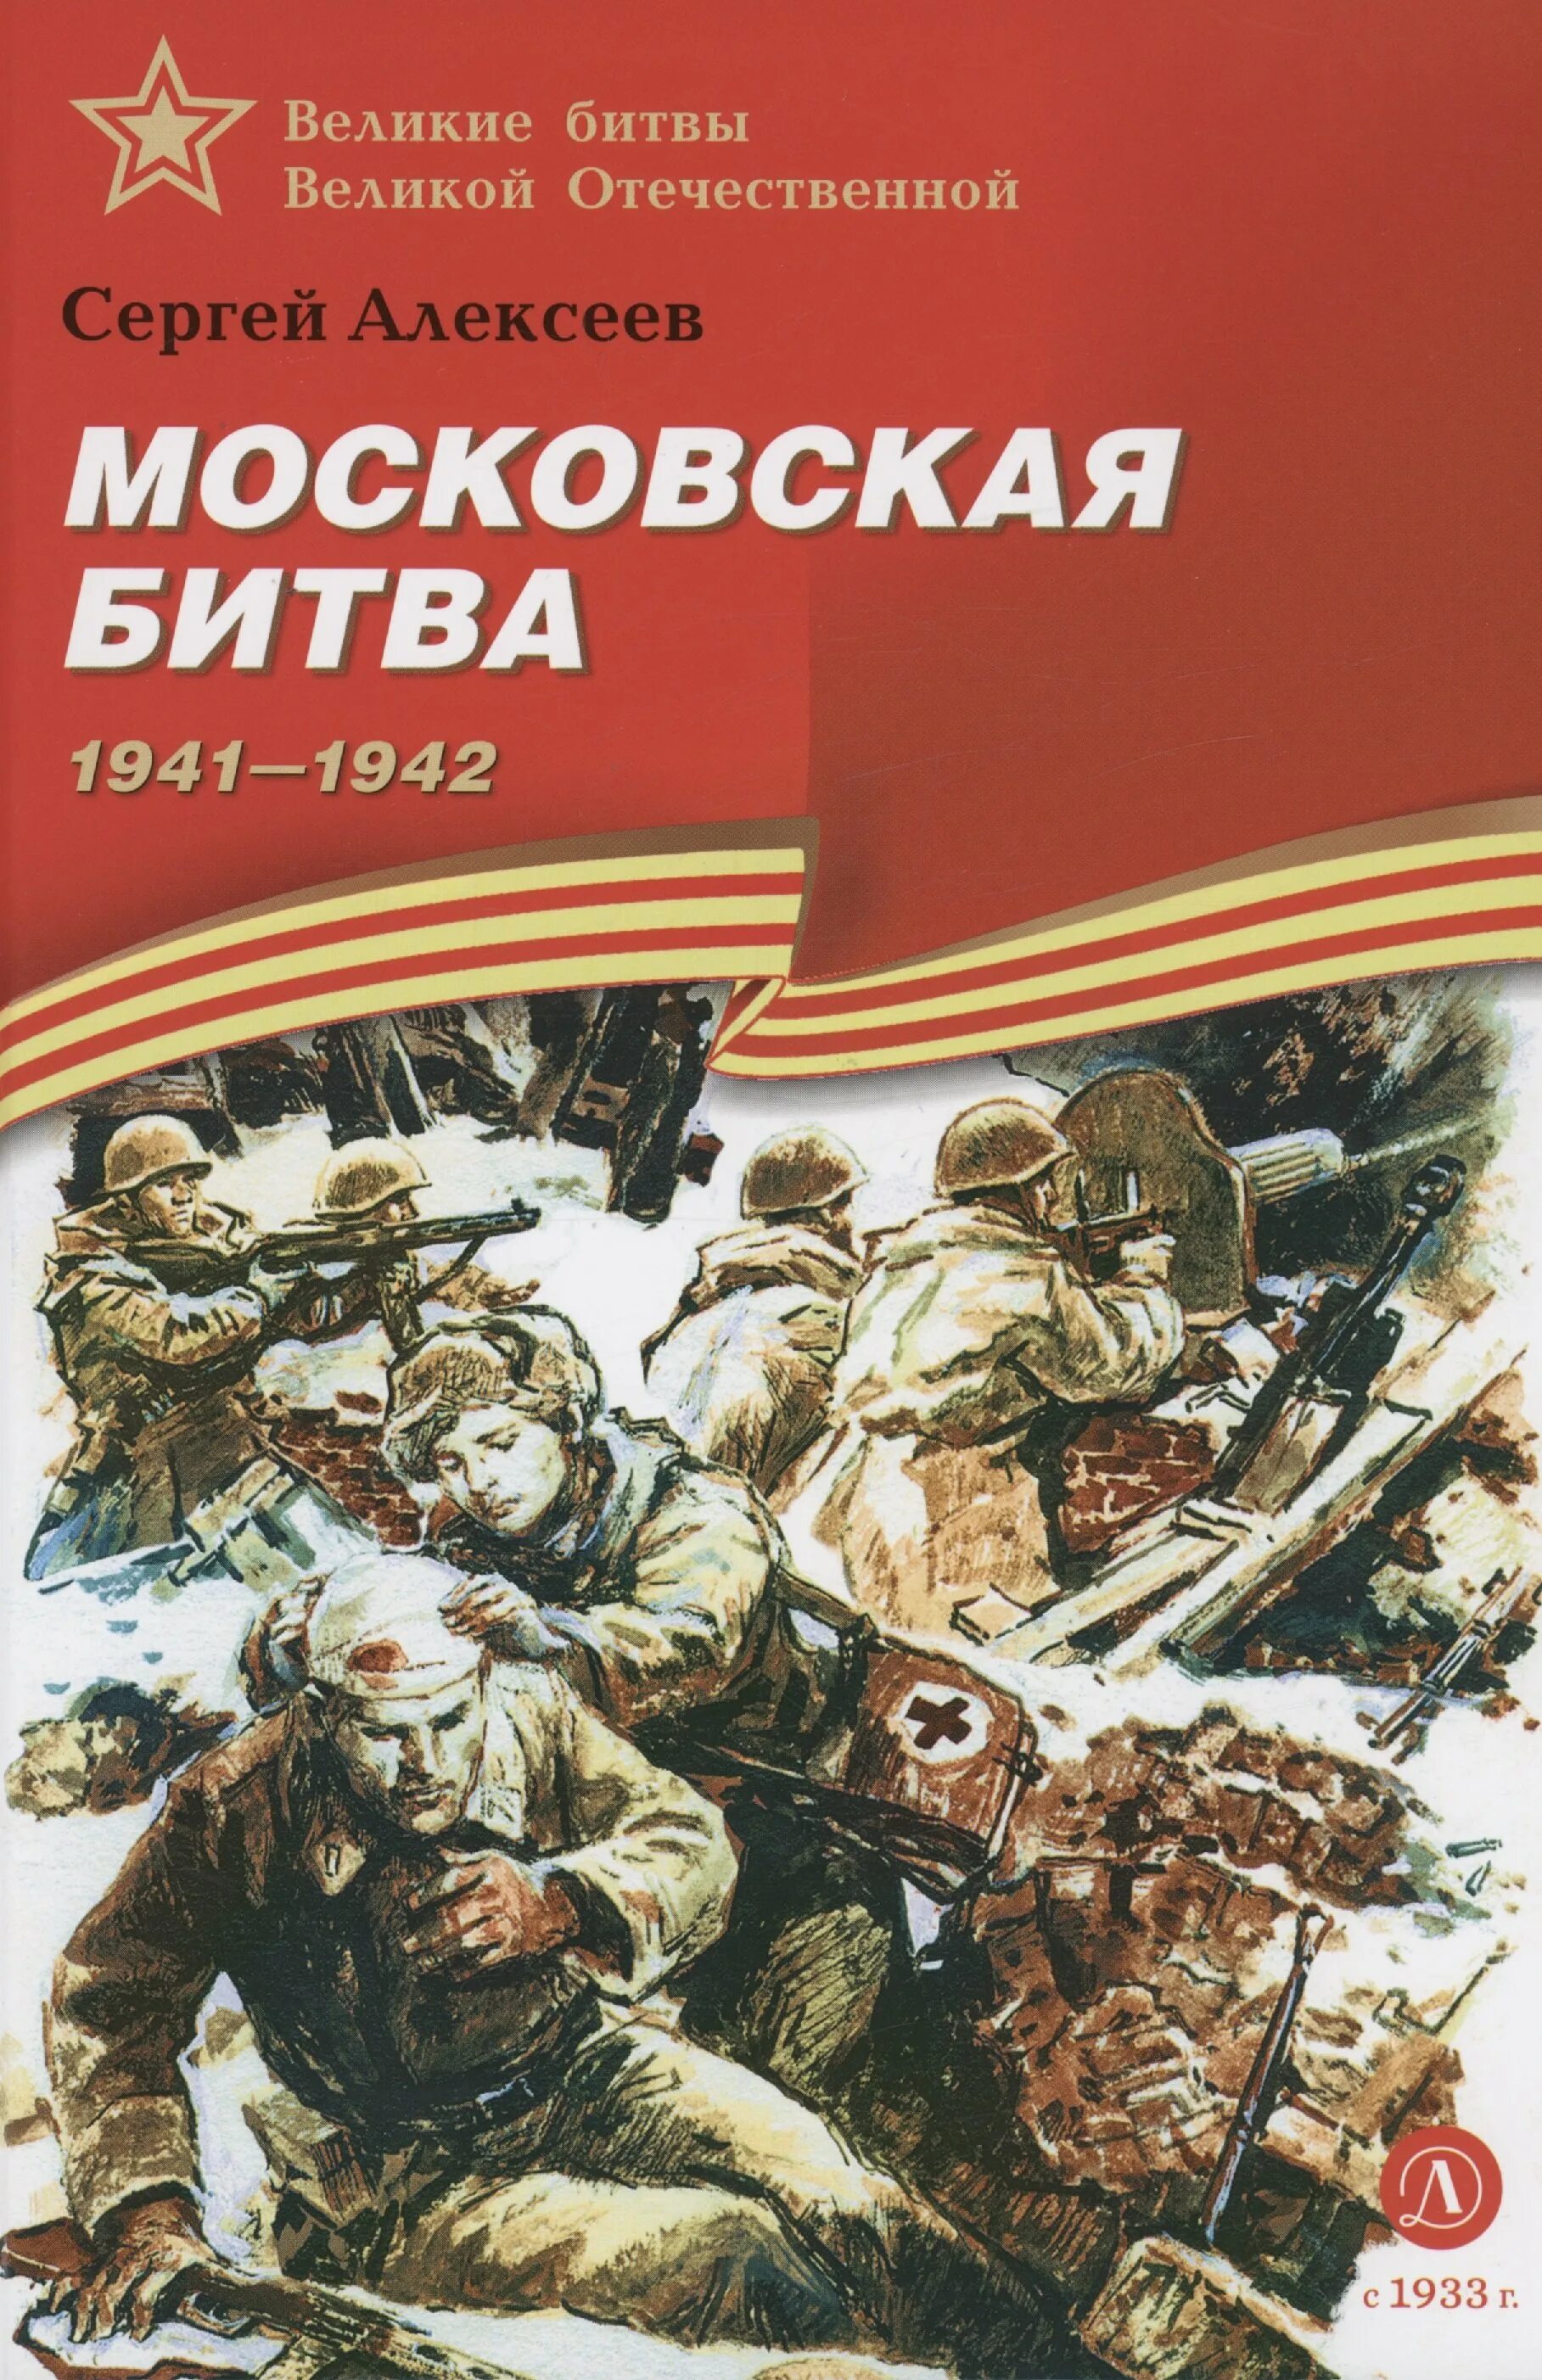 Книги великих военных. Книга с.Алексеева Московская битва.